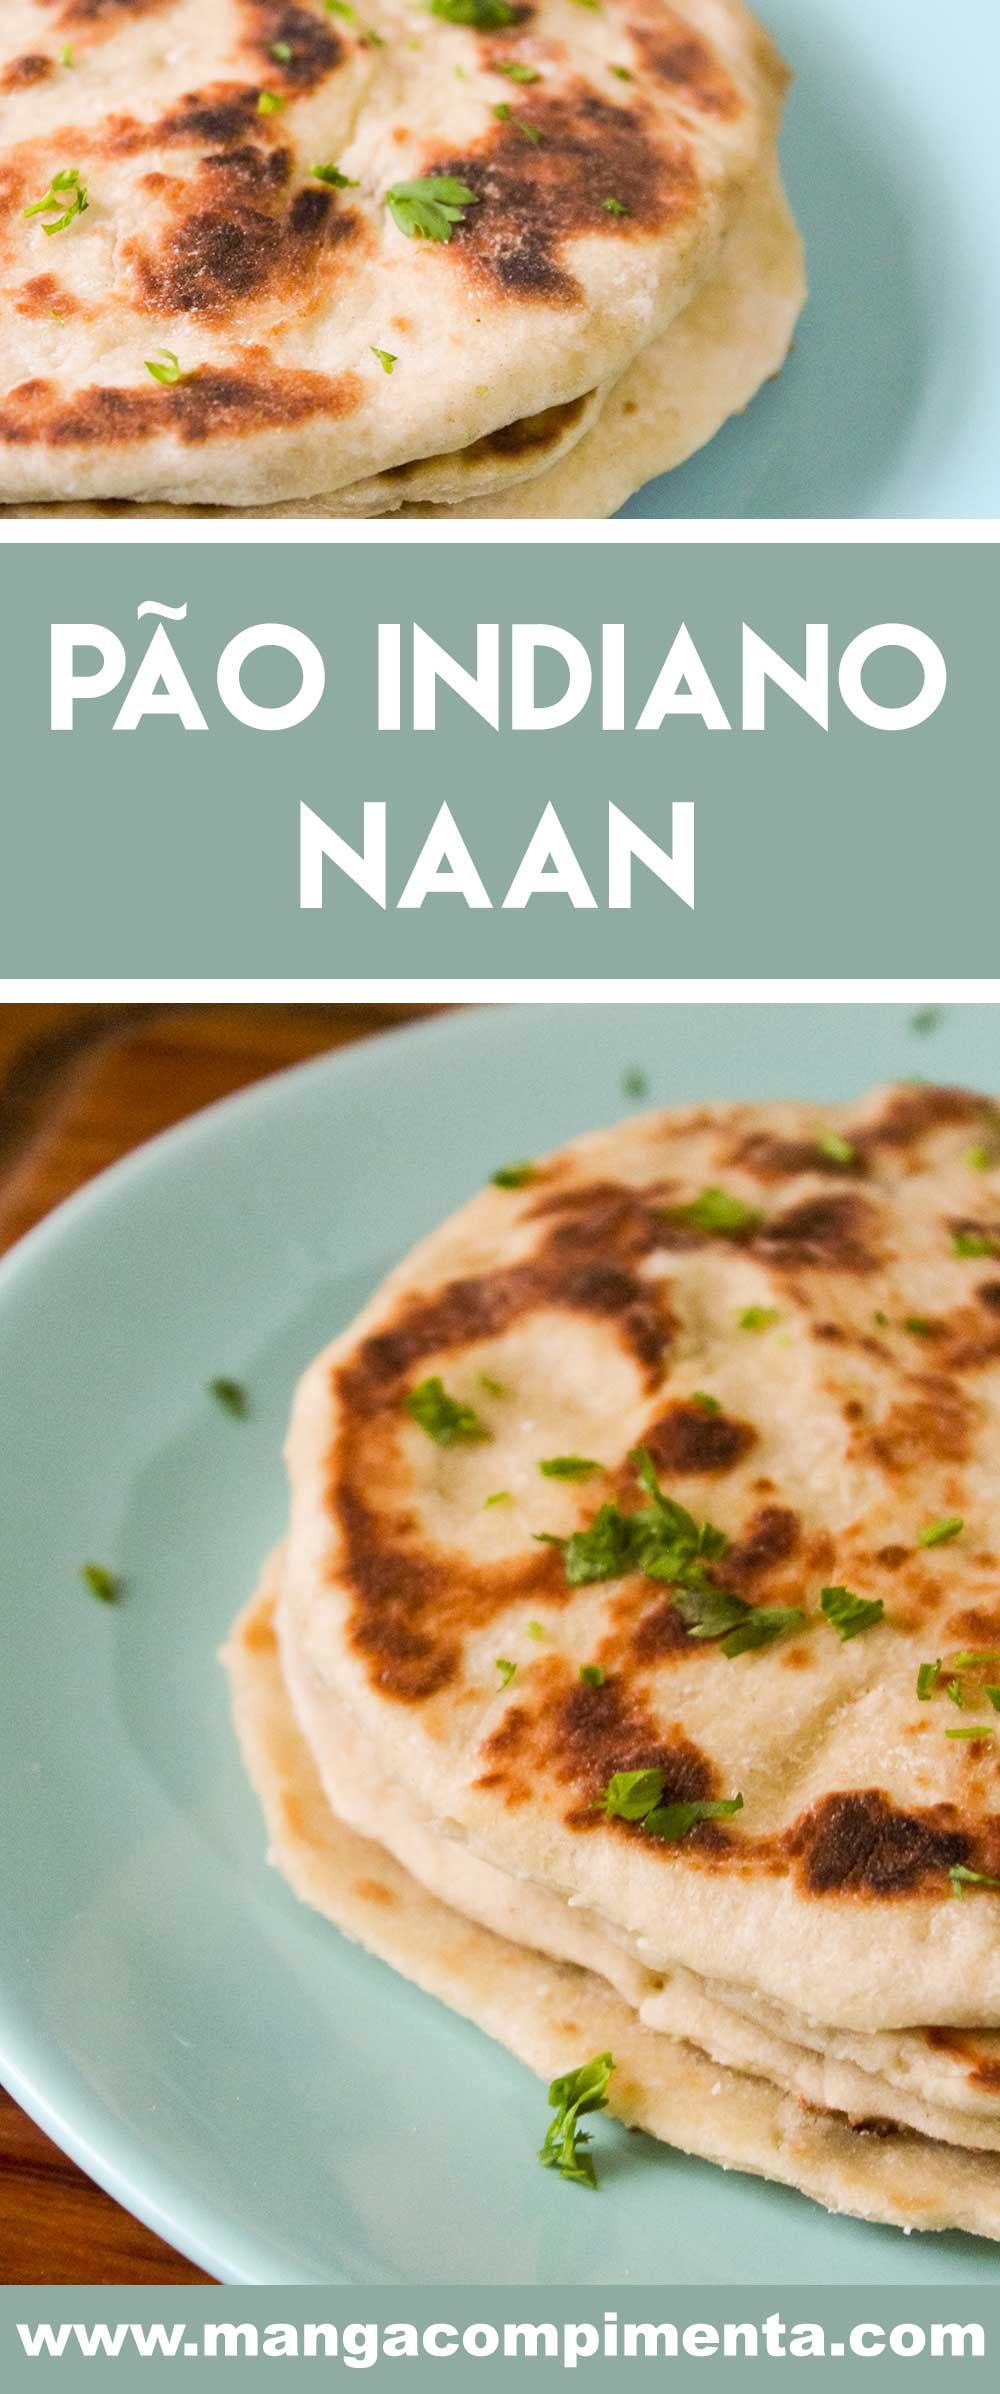 Receita de Pão Indiano Naan - prepare para um jantar indiano ou para servir em um lanche diferente com os amigos.